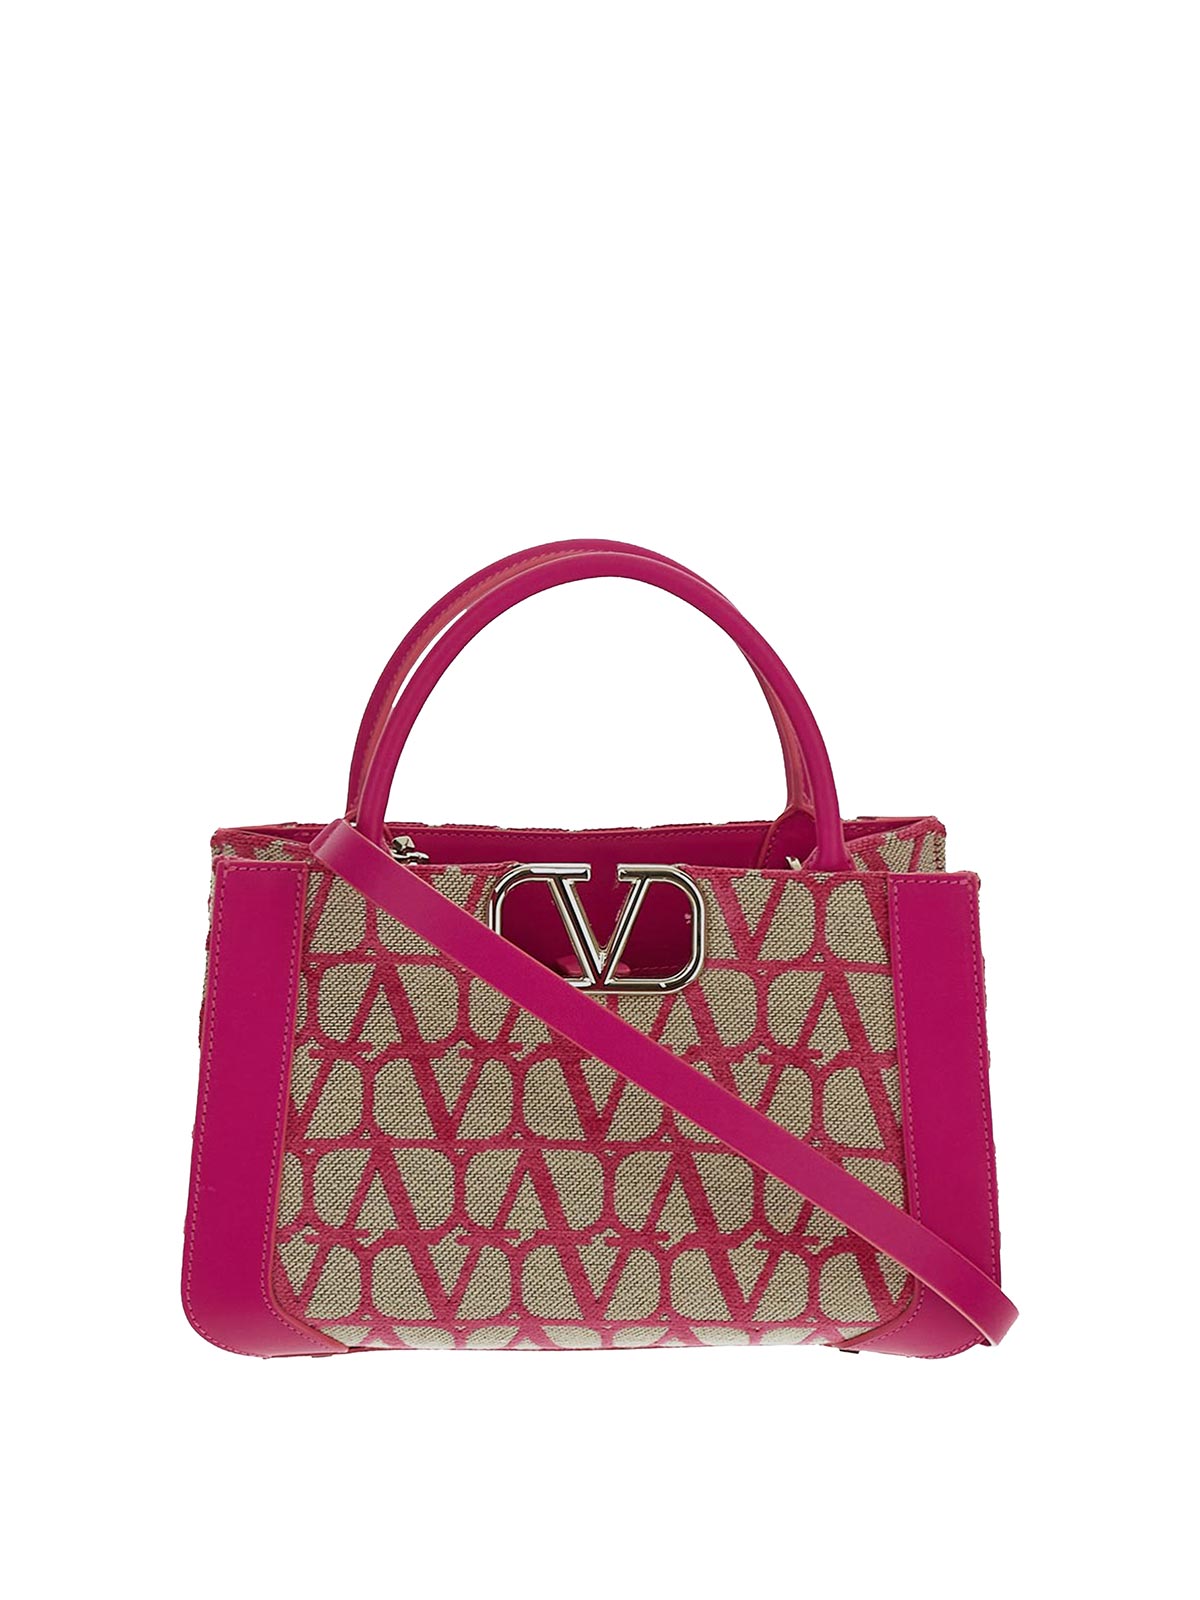 Valentino Garavani Tote Bag In Pink